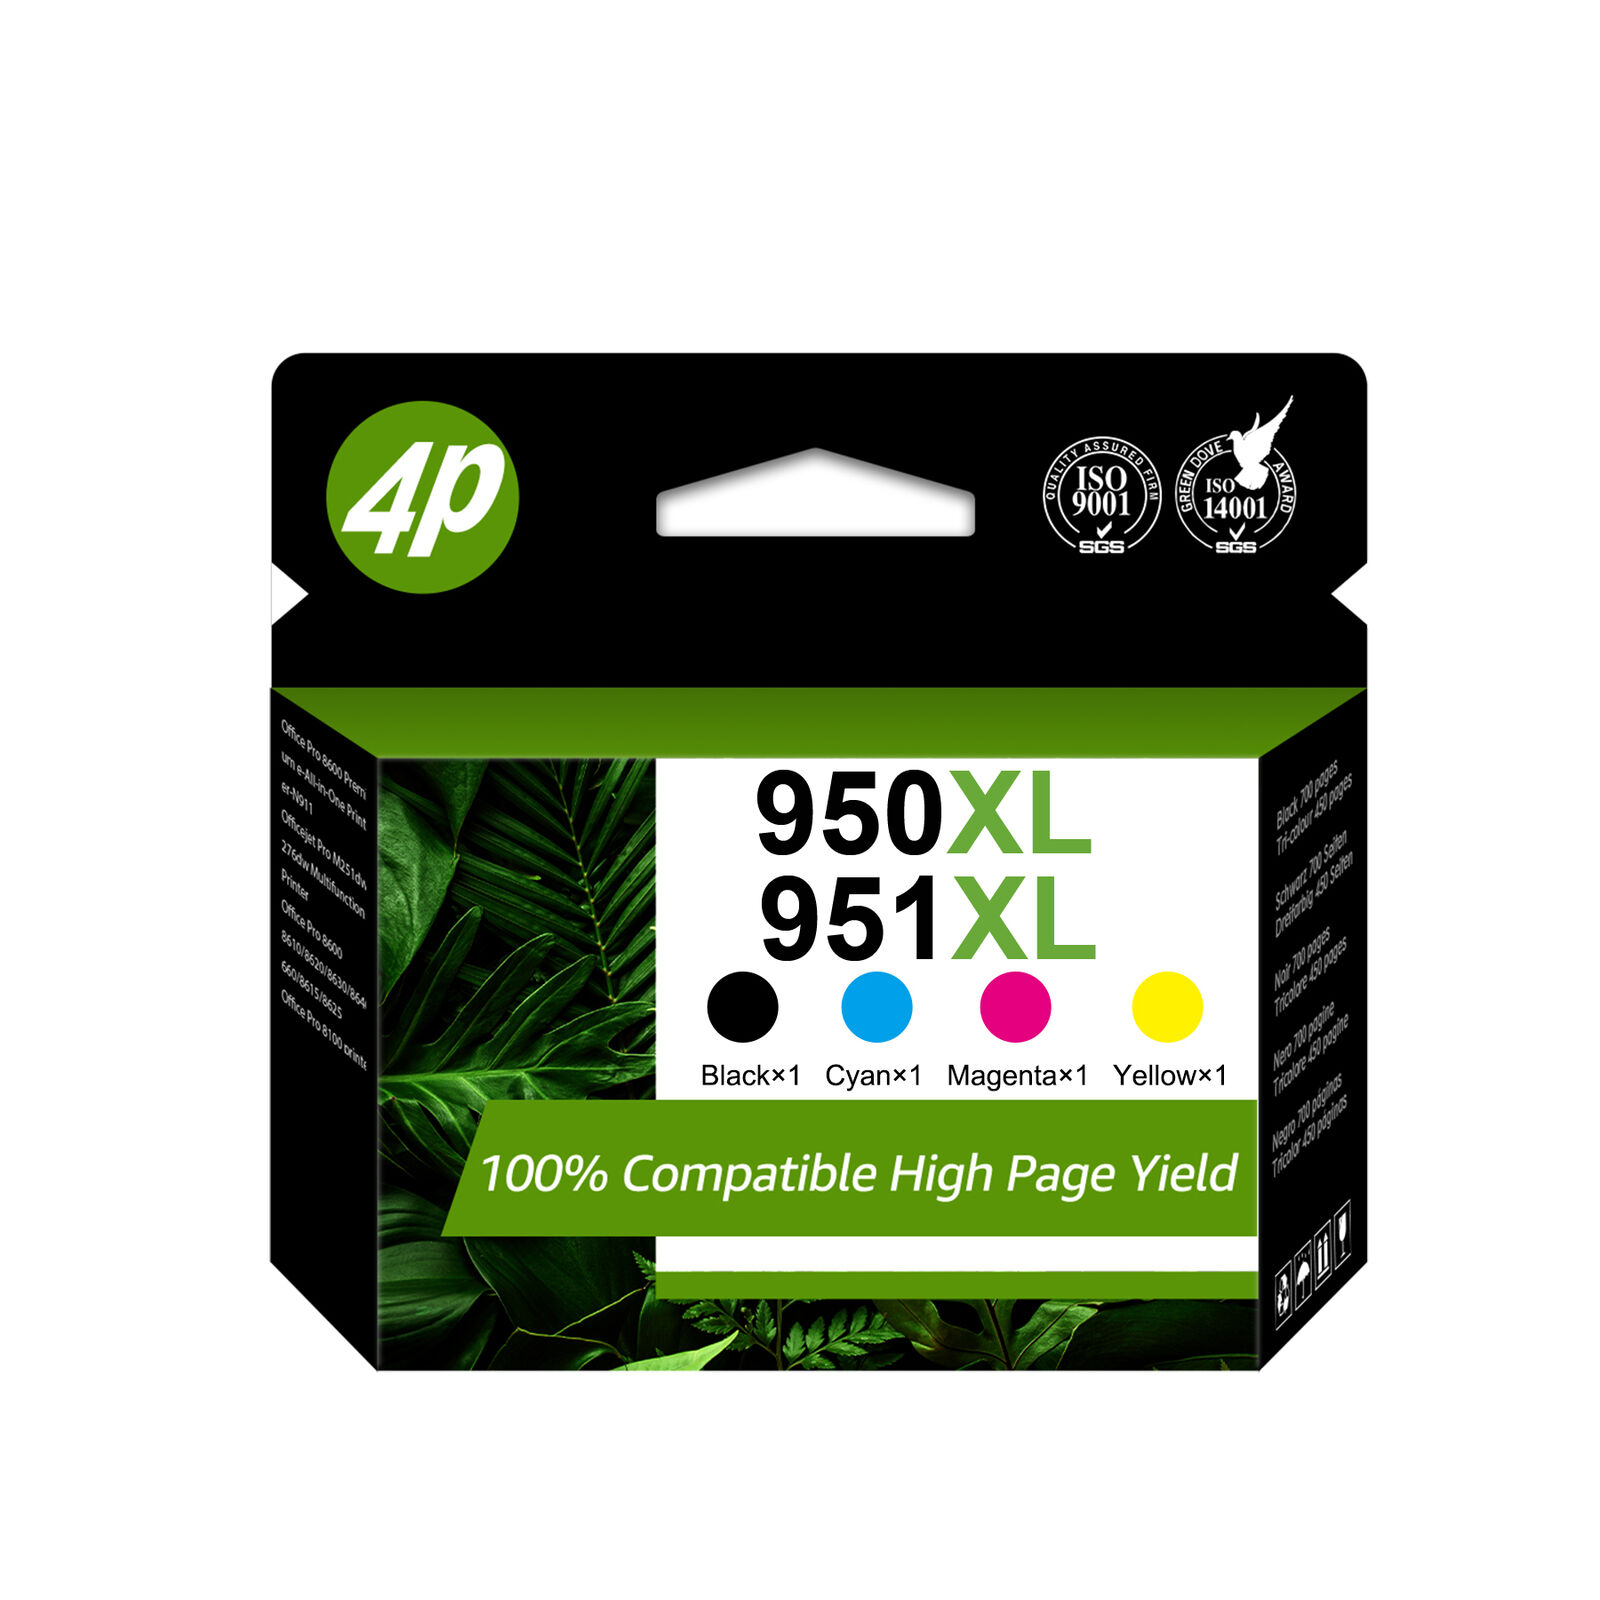 950XL 951XL Ink Cartridge for HP 950 951 Officejet Pro 8610 8615 8620 8625 8630